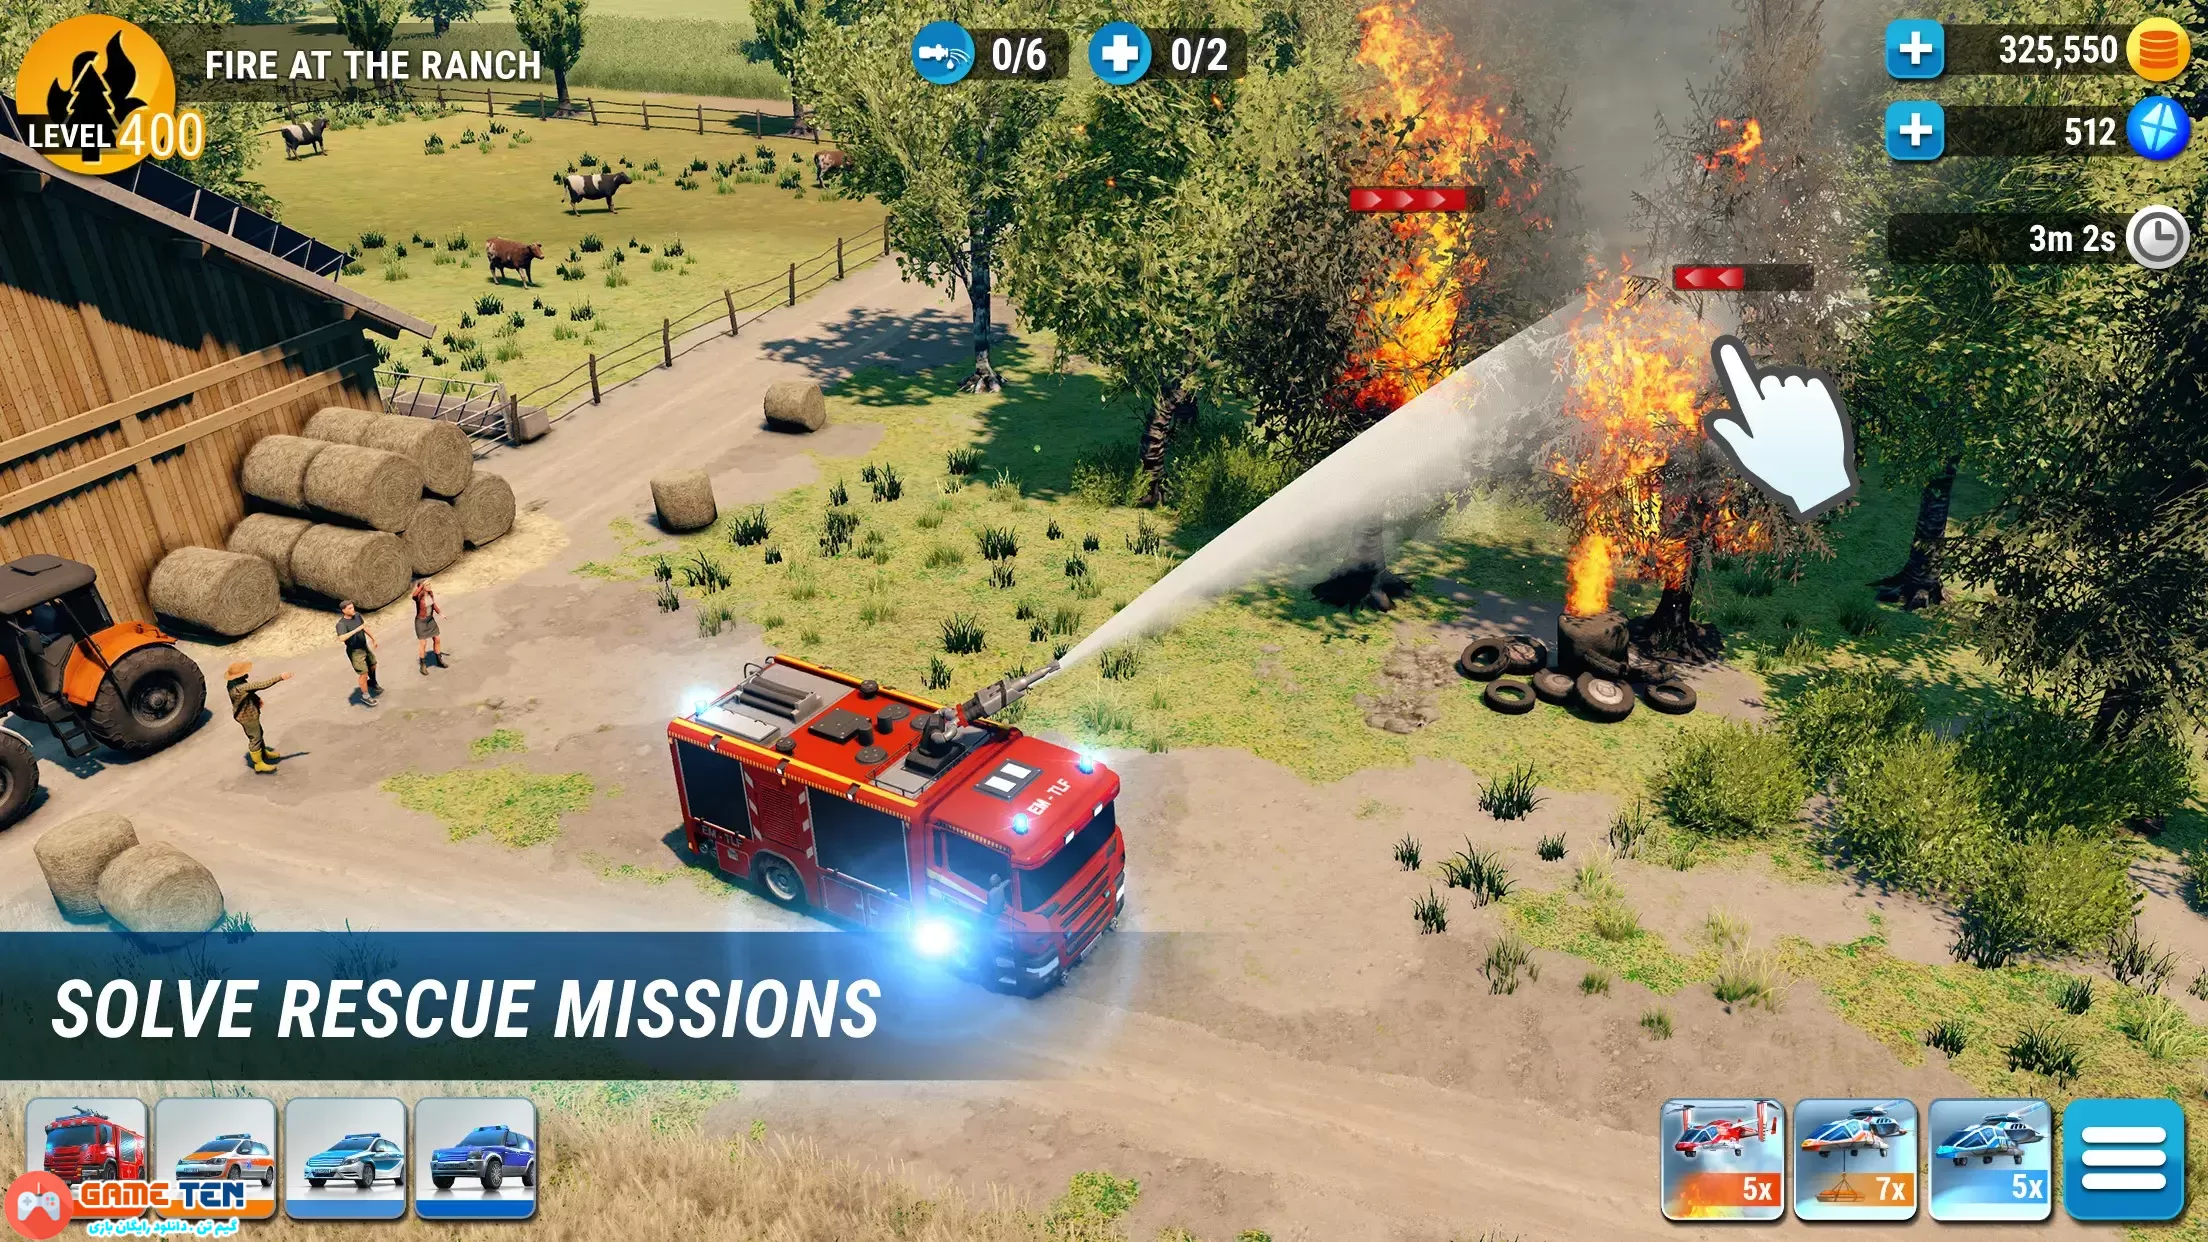 دانلود مود بازی EMERGENCY HQ: rescue strategy برای اندروید